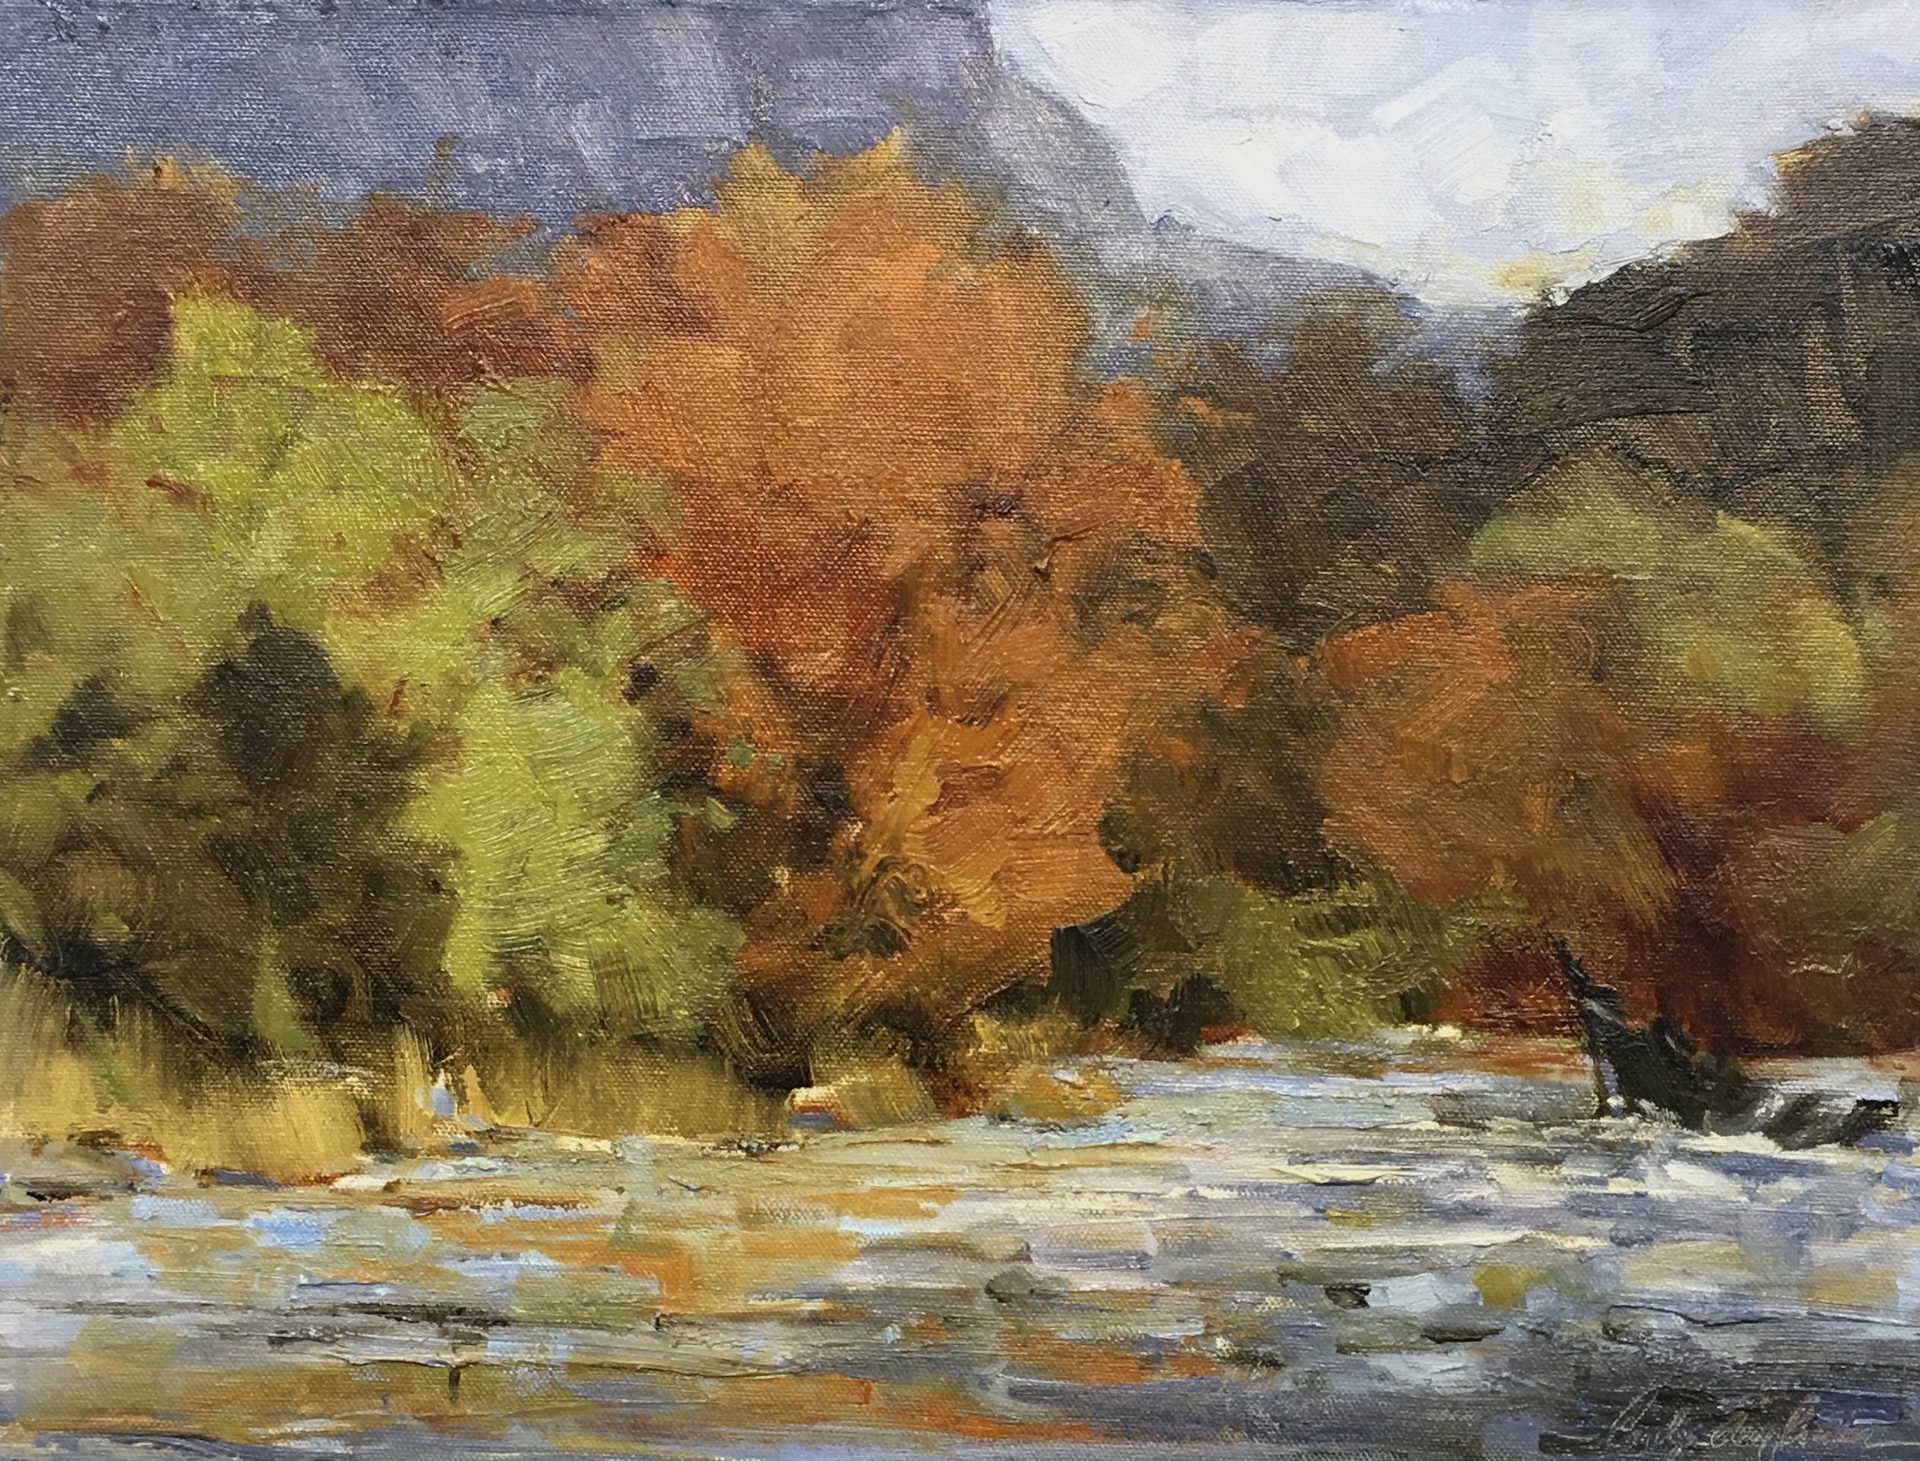 Appalachian River by Carolyn Crocker (Rue)